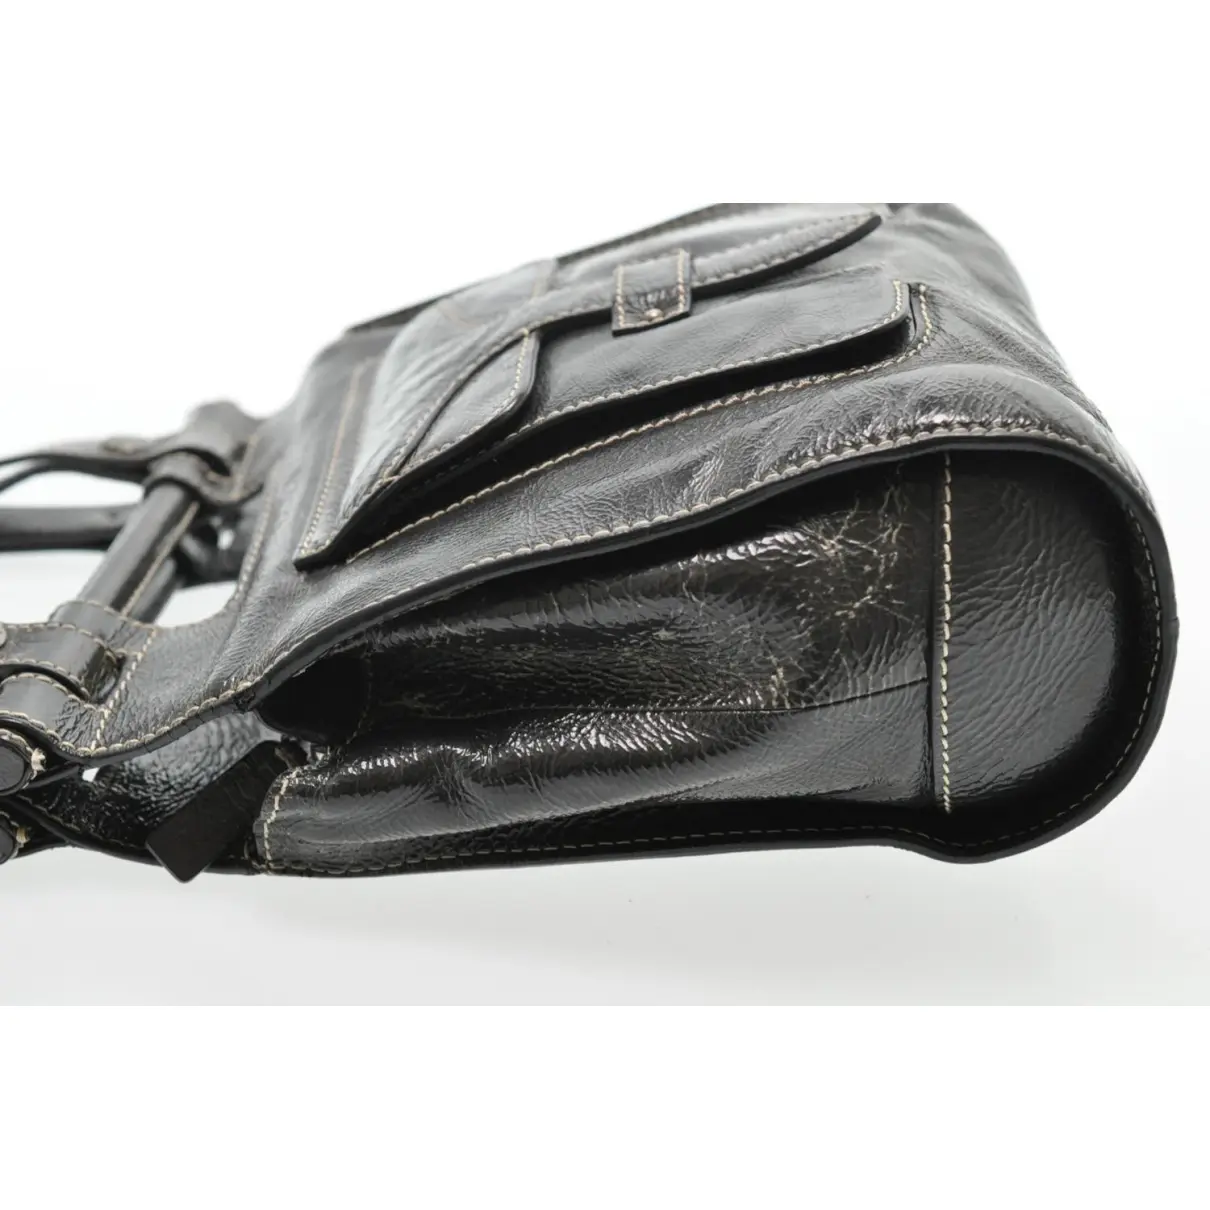 Patent leather handbag Loewe - Vintage